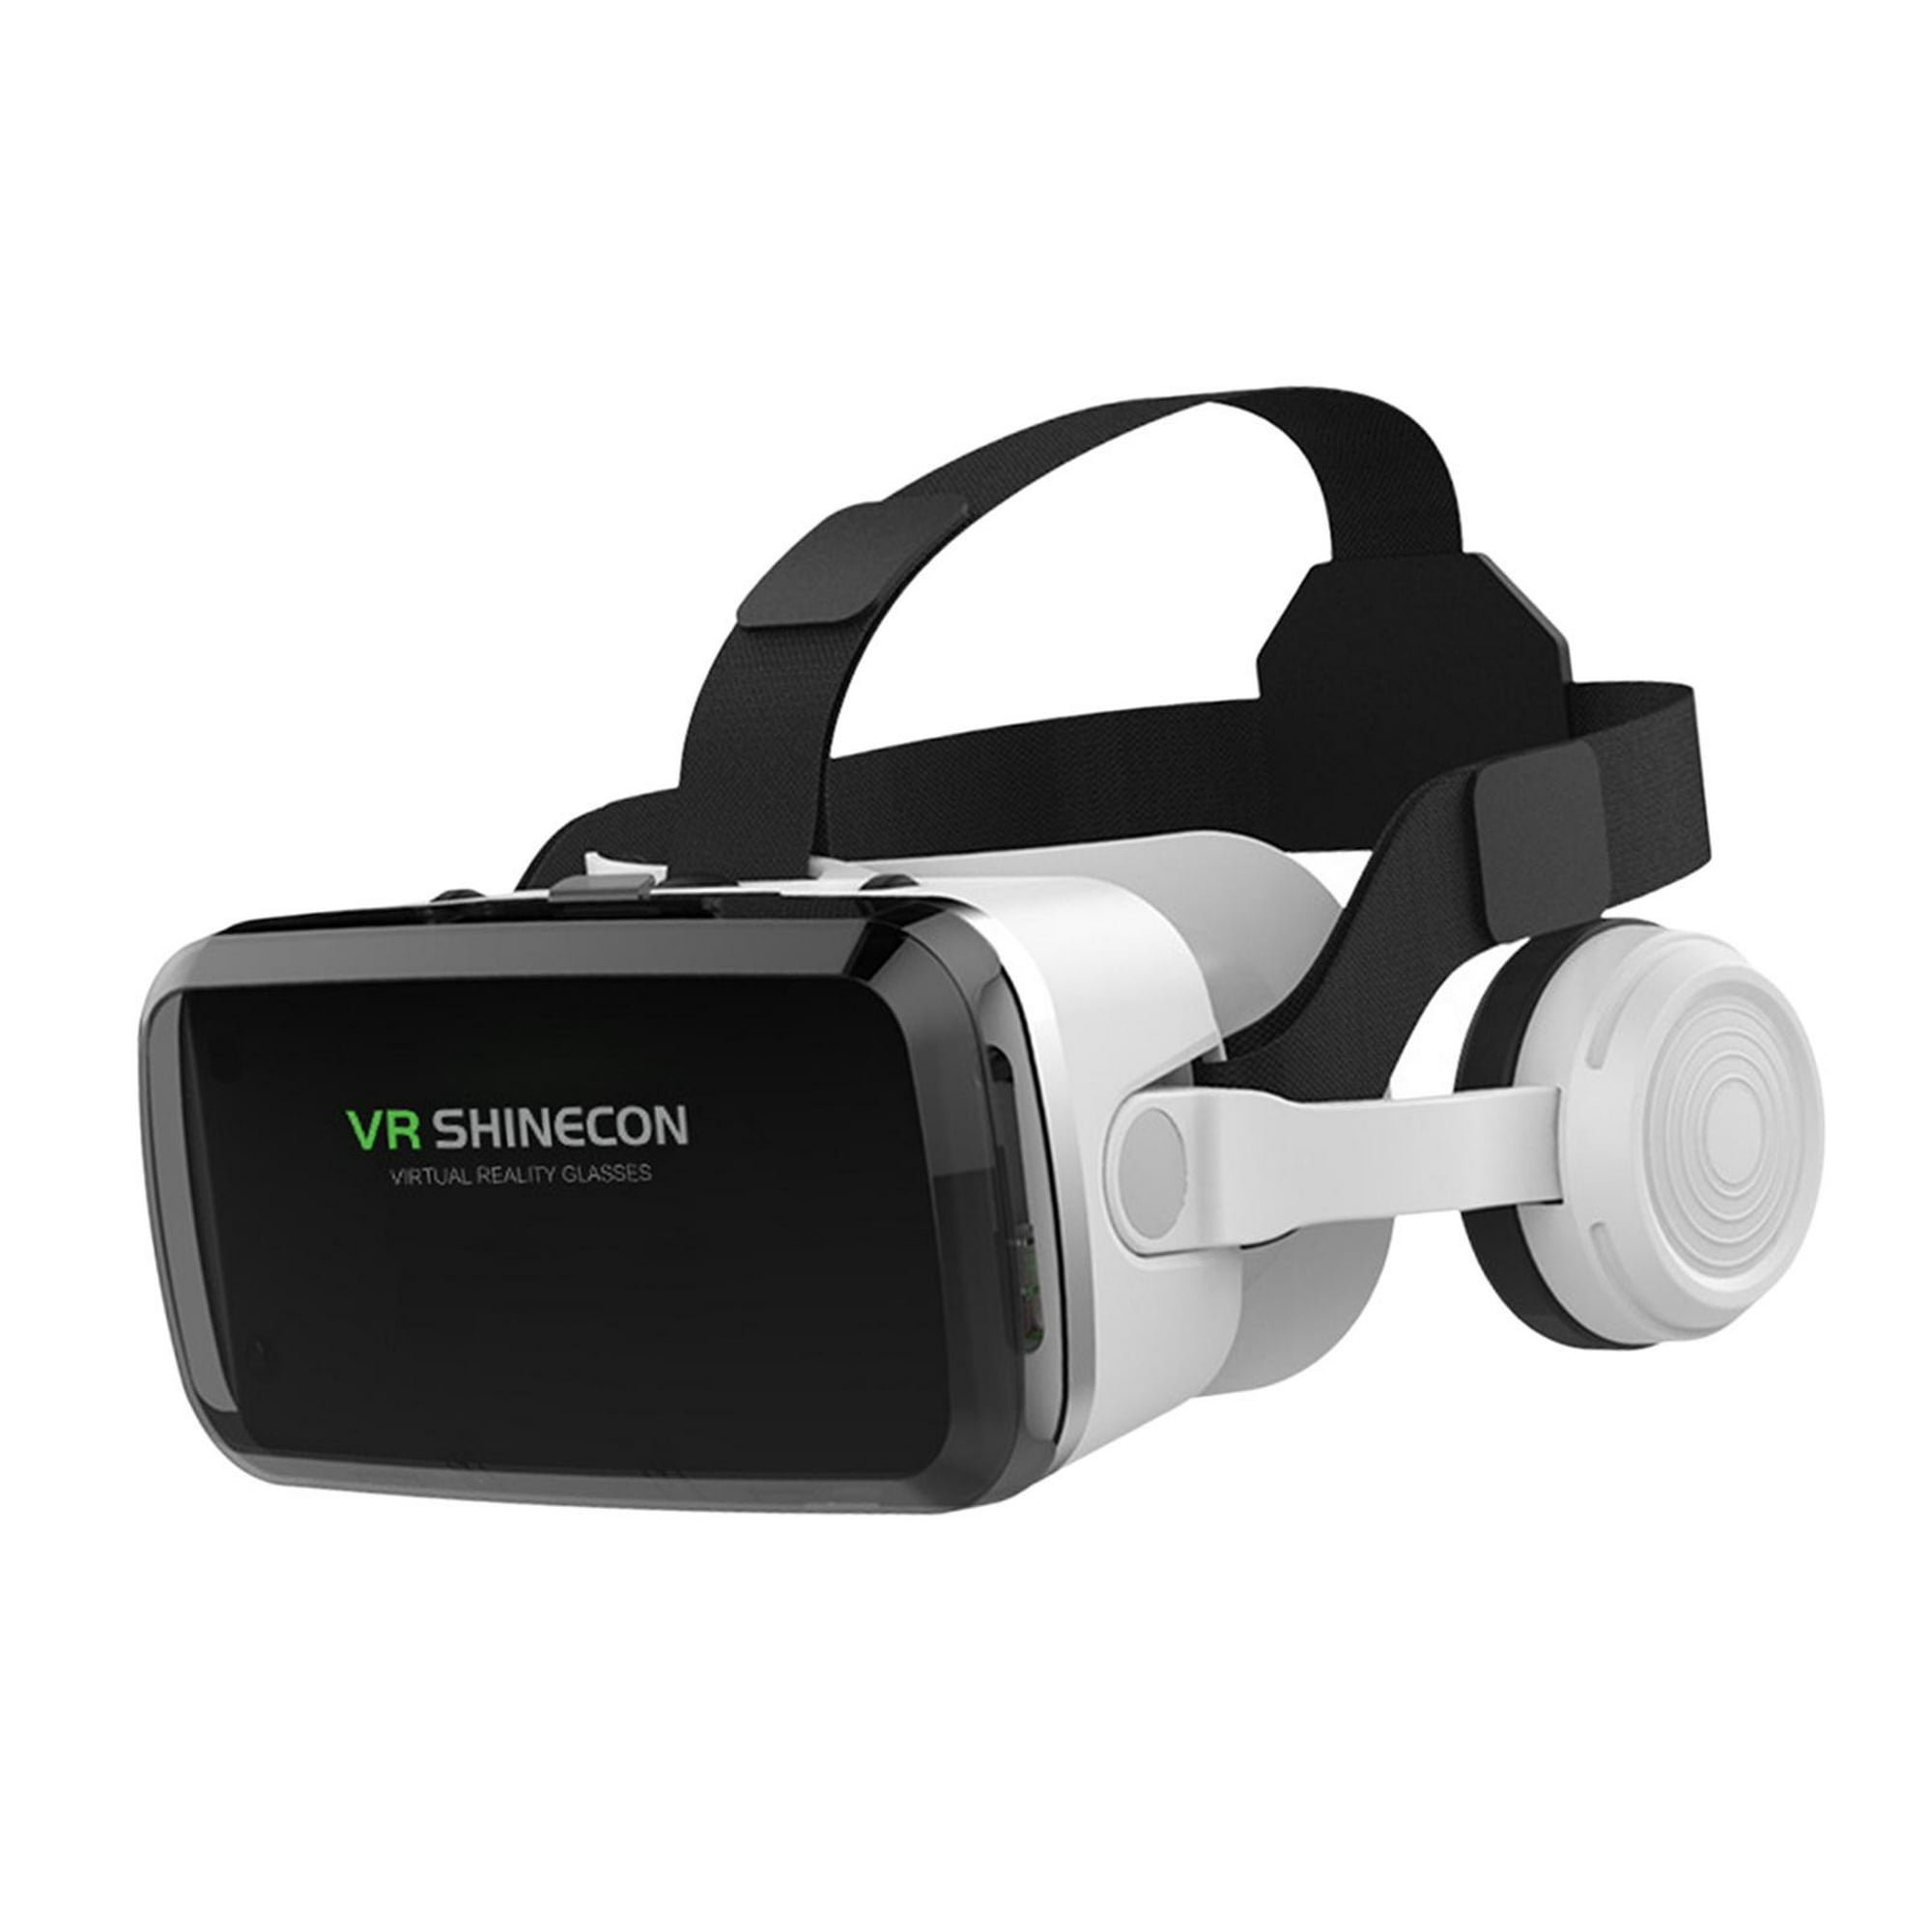 Gafas VR realidad aumentada virtual para usar con celulares hasta 6.3  pulgadas incluye control para manejo a distancia ideal para usar con app y  ver